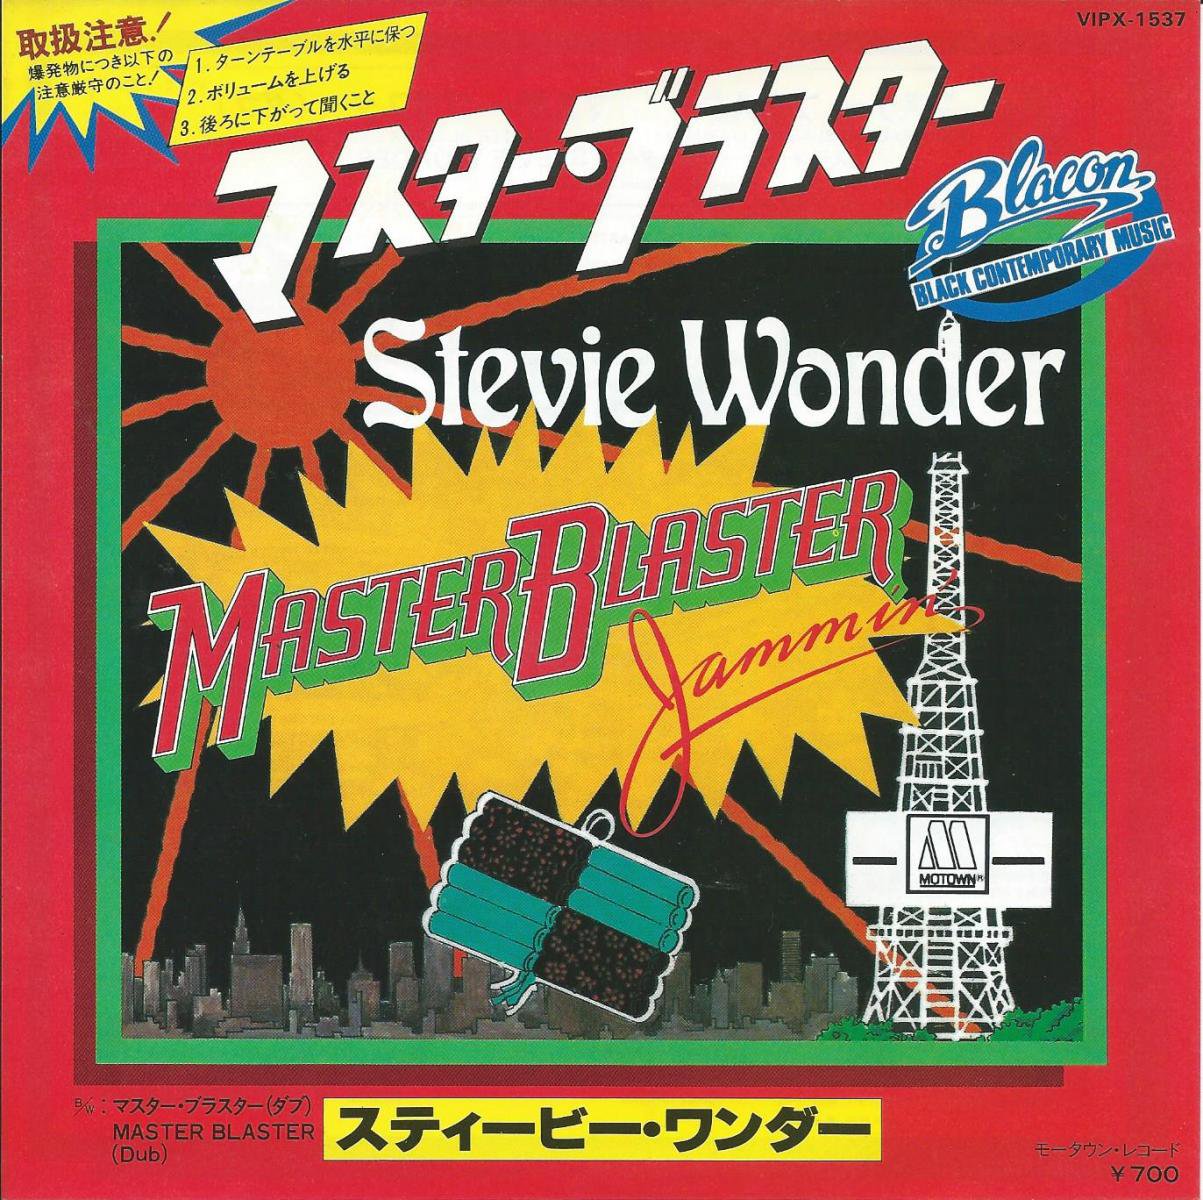 スティービー・ワンダー STEVIE WONDER / マスター・ブラスター MASTER